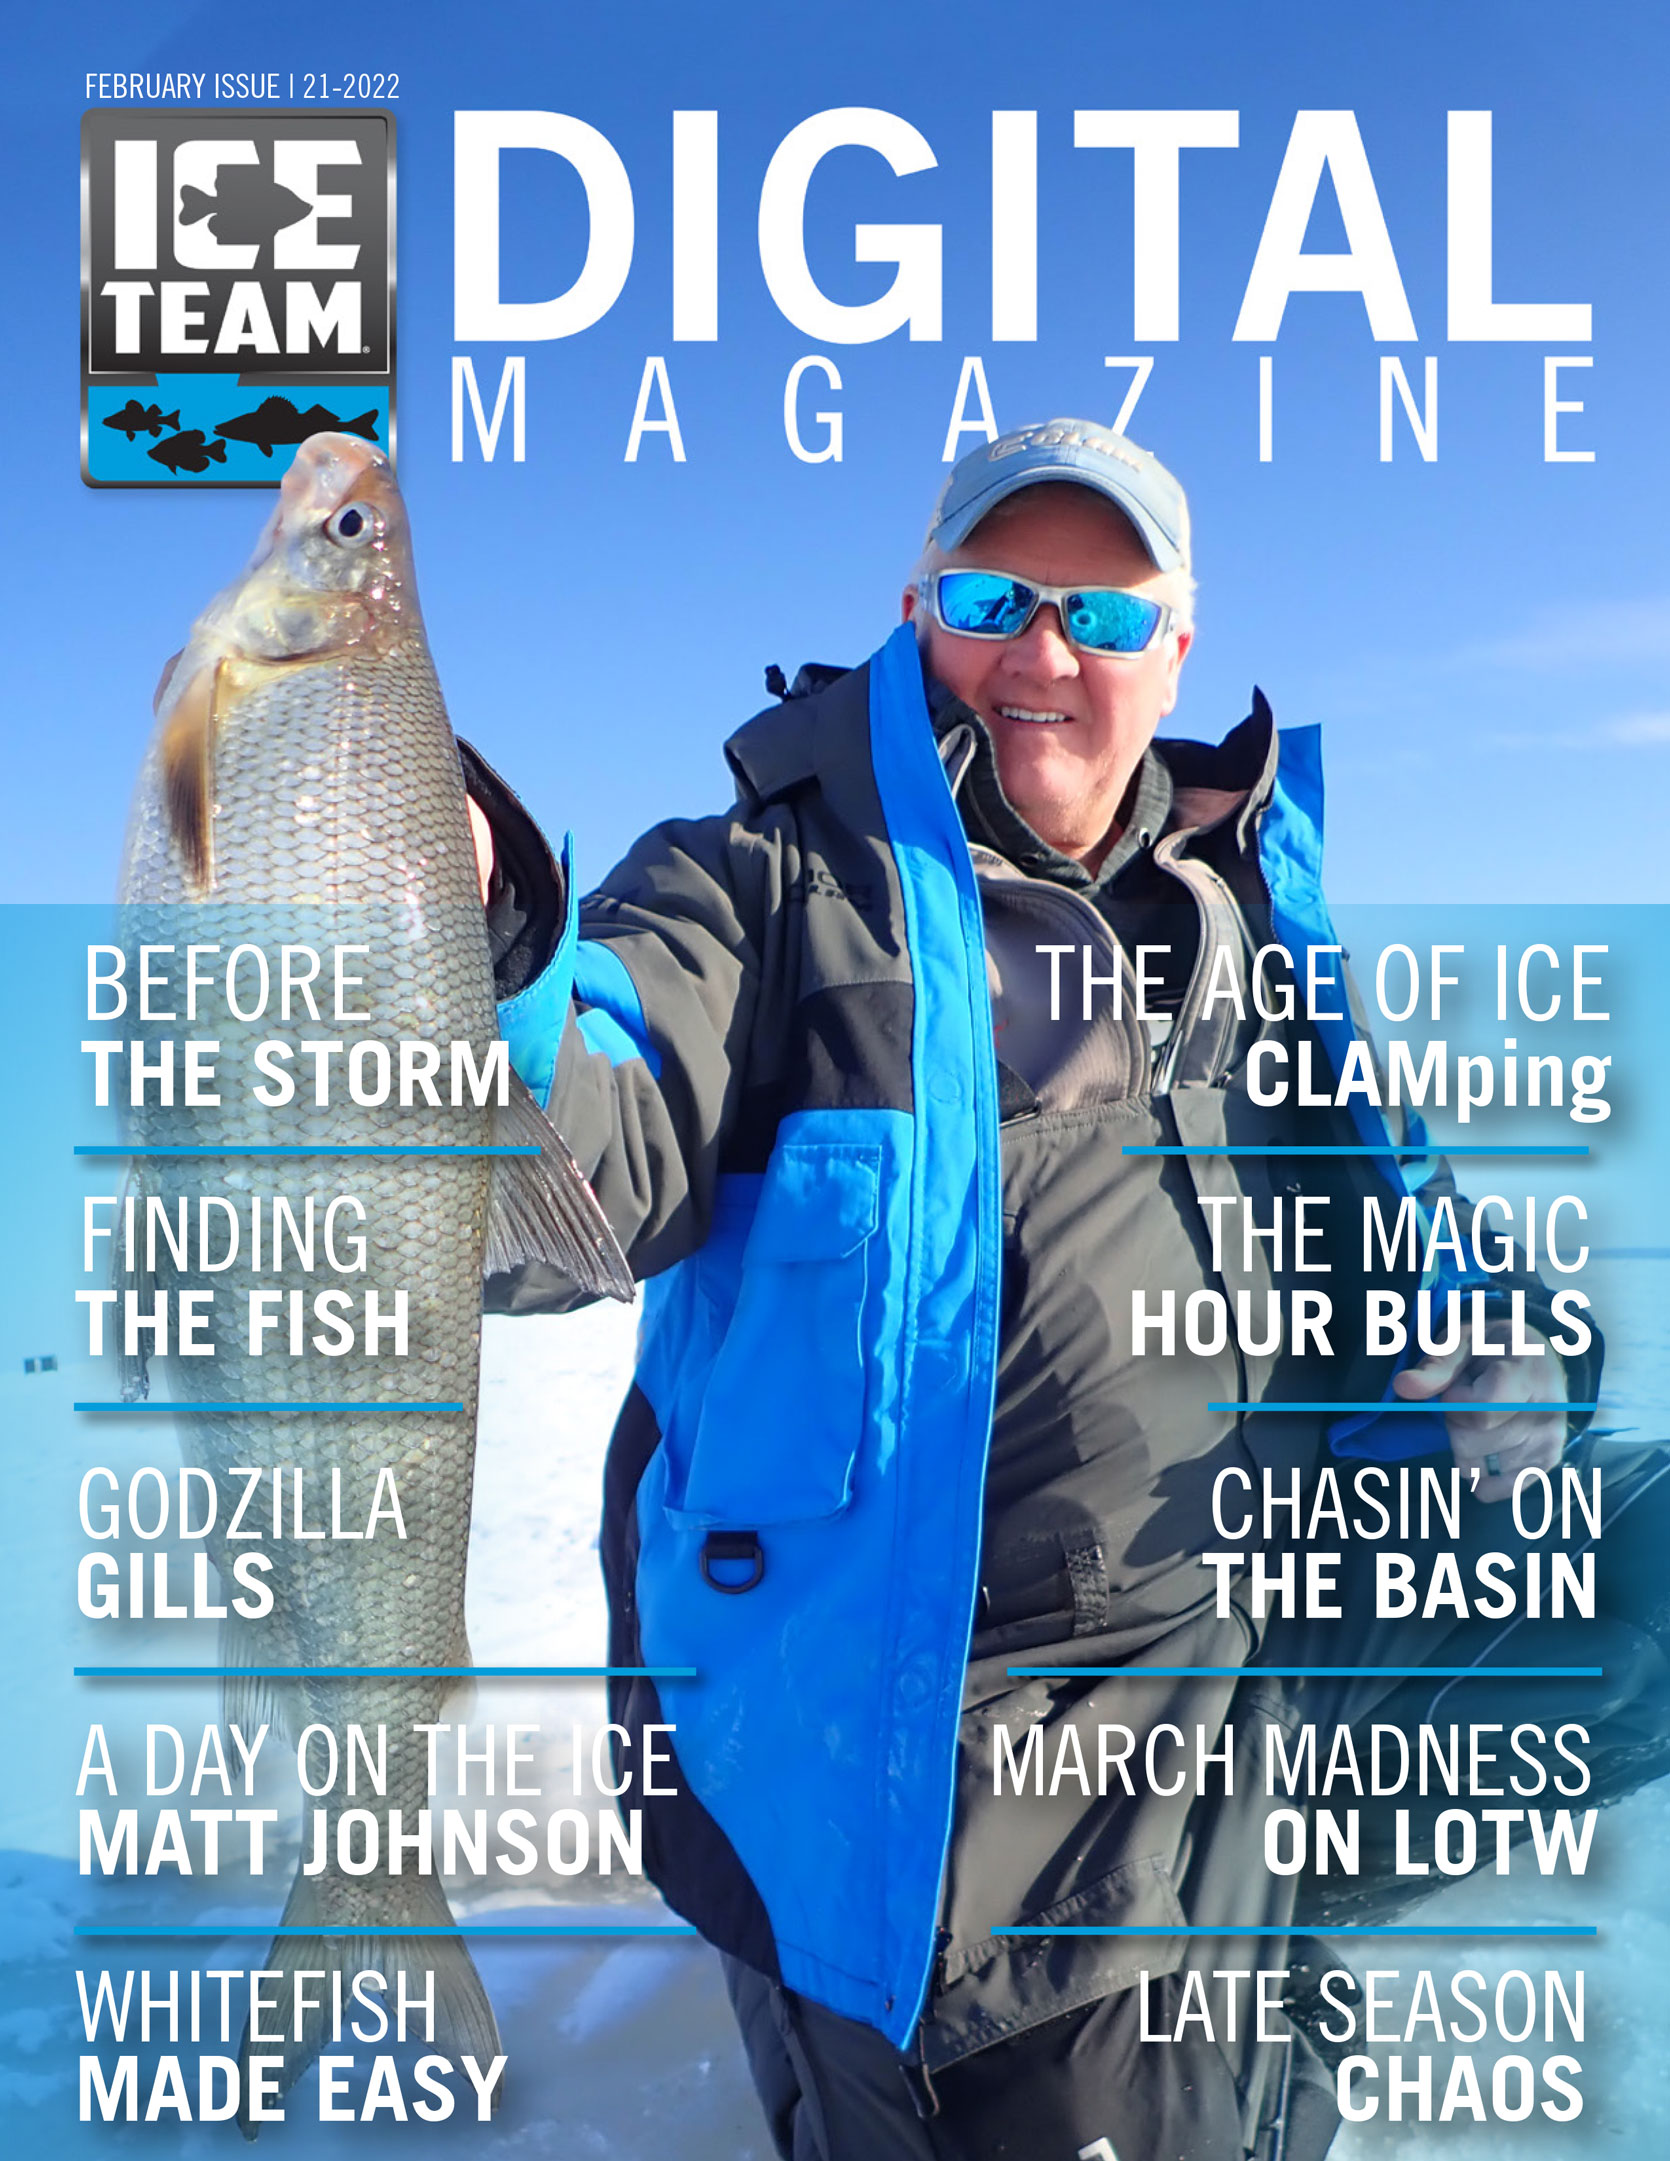 Ice Team Digital Magazine | February 2022